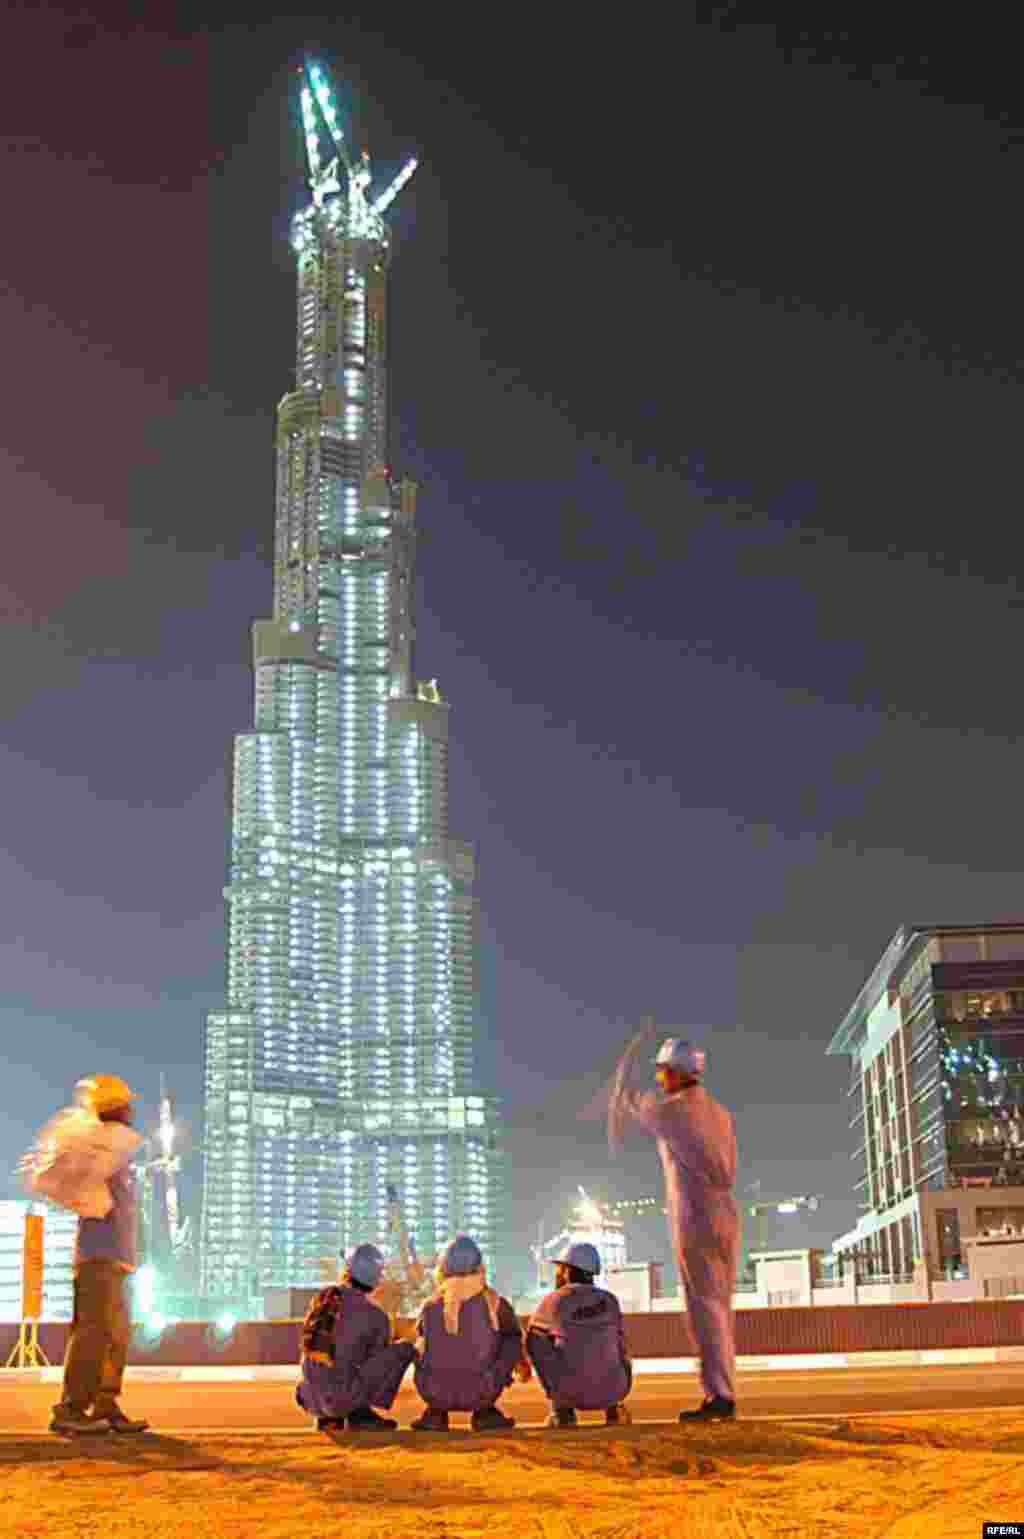 برج دبی که در سال 2009بلندترین برج دنیا خواهد شد . و کارگران هندی که پس از اتمام کار منتظر تاکسی می مانند . ولی تاکسی های دبی حاضر نیستند کارگران هندی را سوار کنند و می گویند که آنها بوی ناخوشایندی می دهند